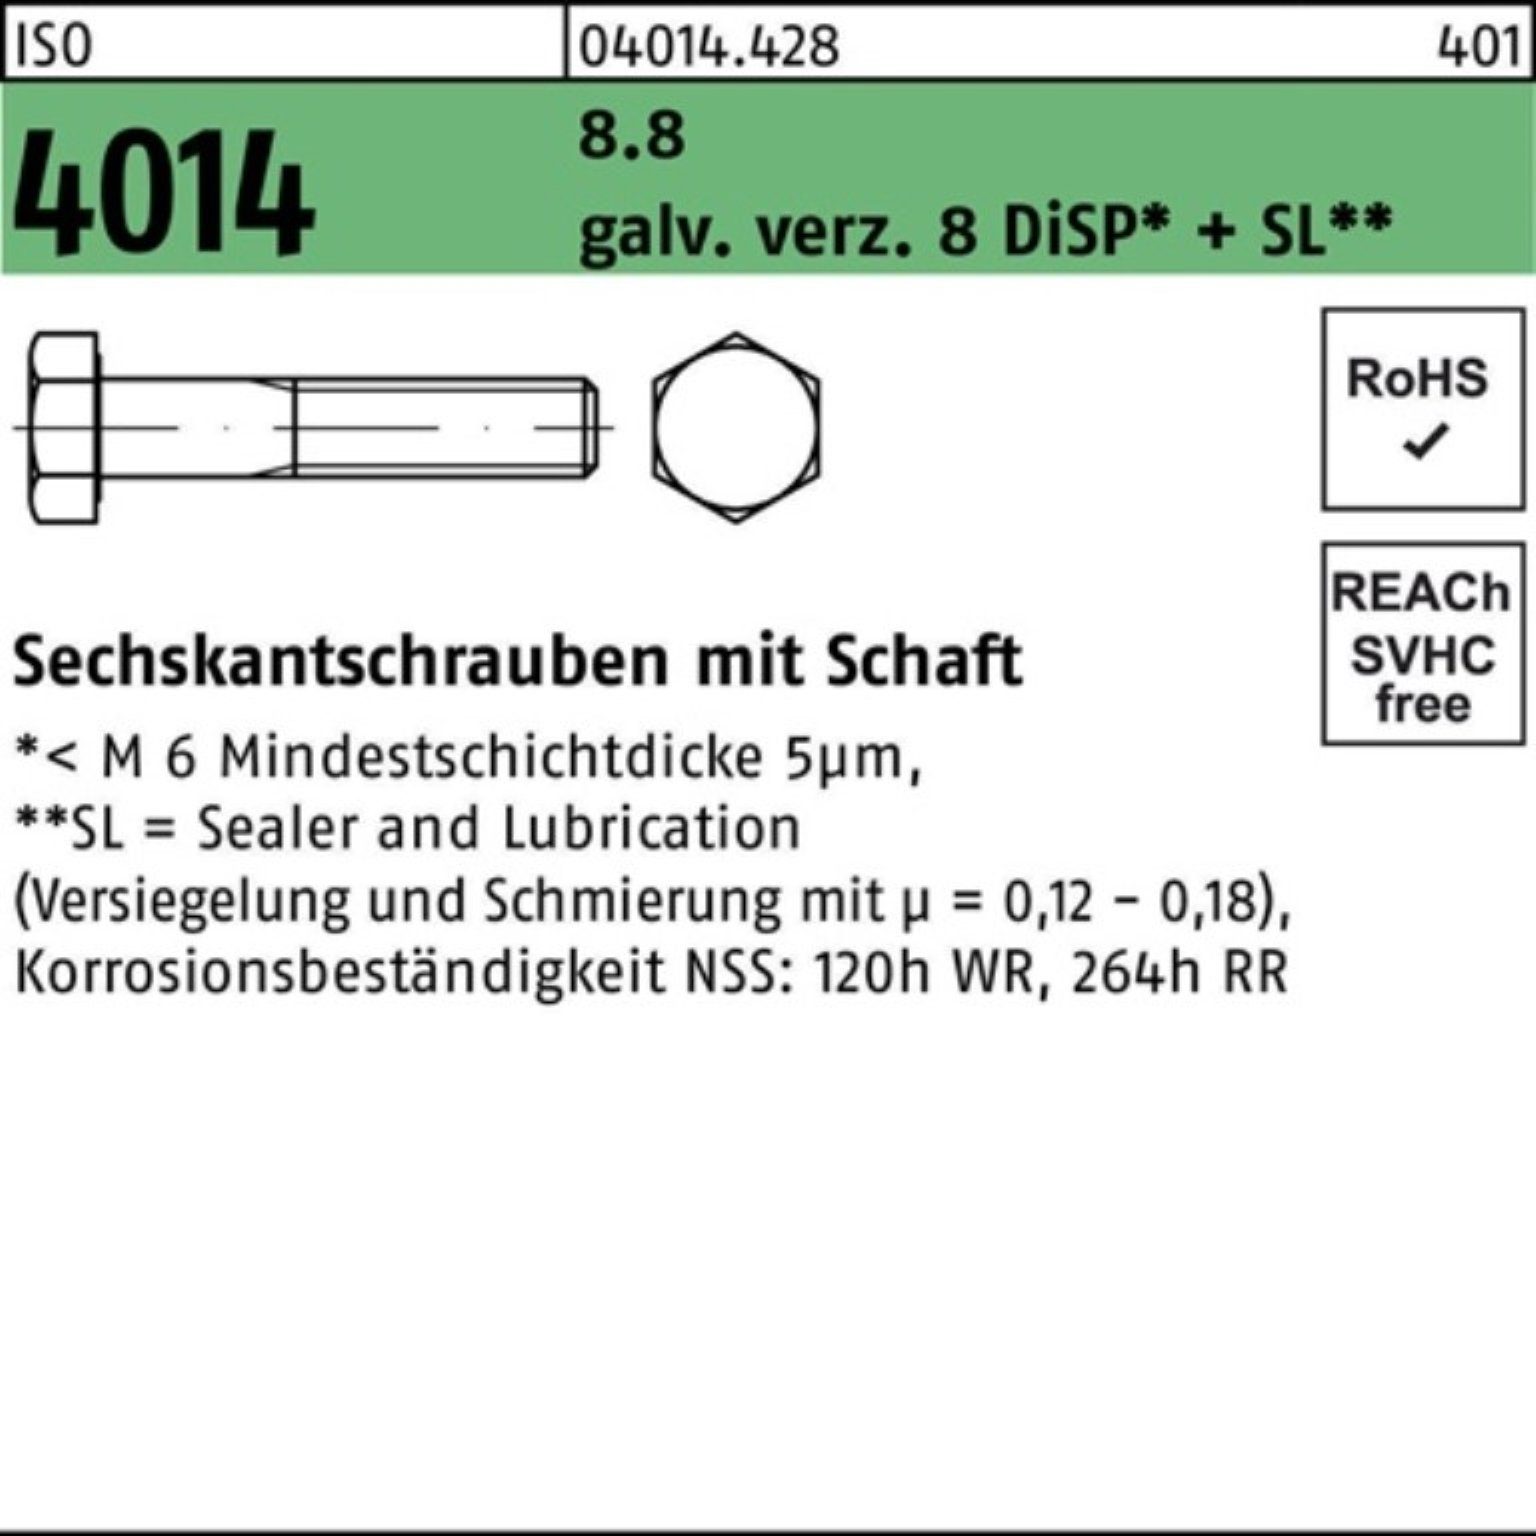 Schaft 8.8 Bufab Sechskantschraube D 100er Pack 8 galv.verz. ISO M14x75 4014 Sechskantschraube